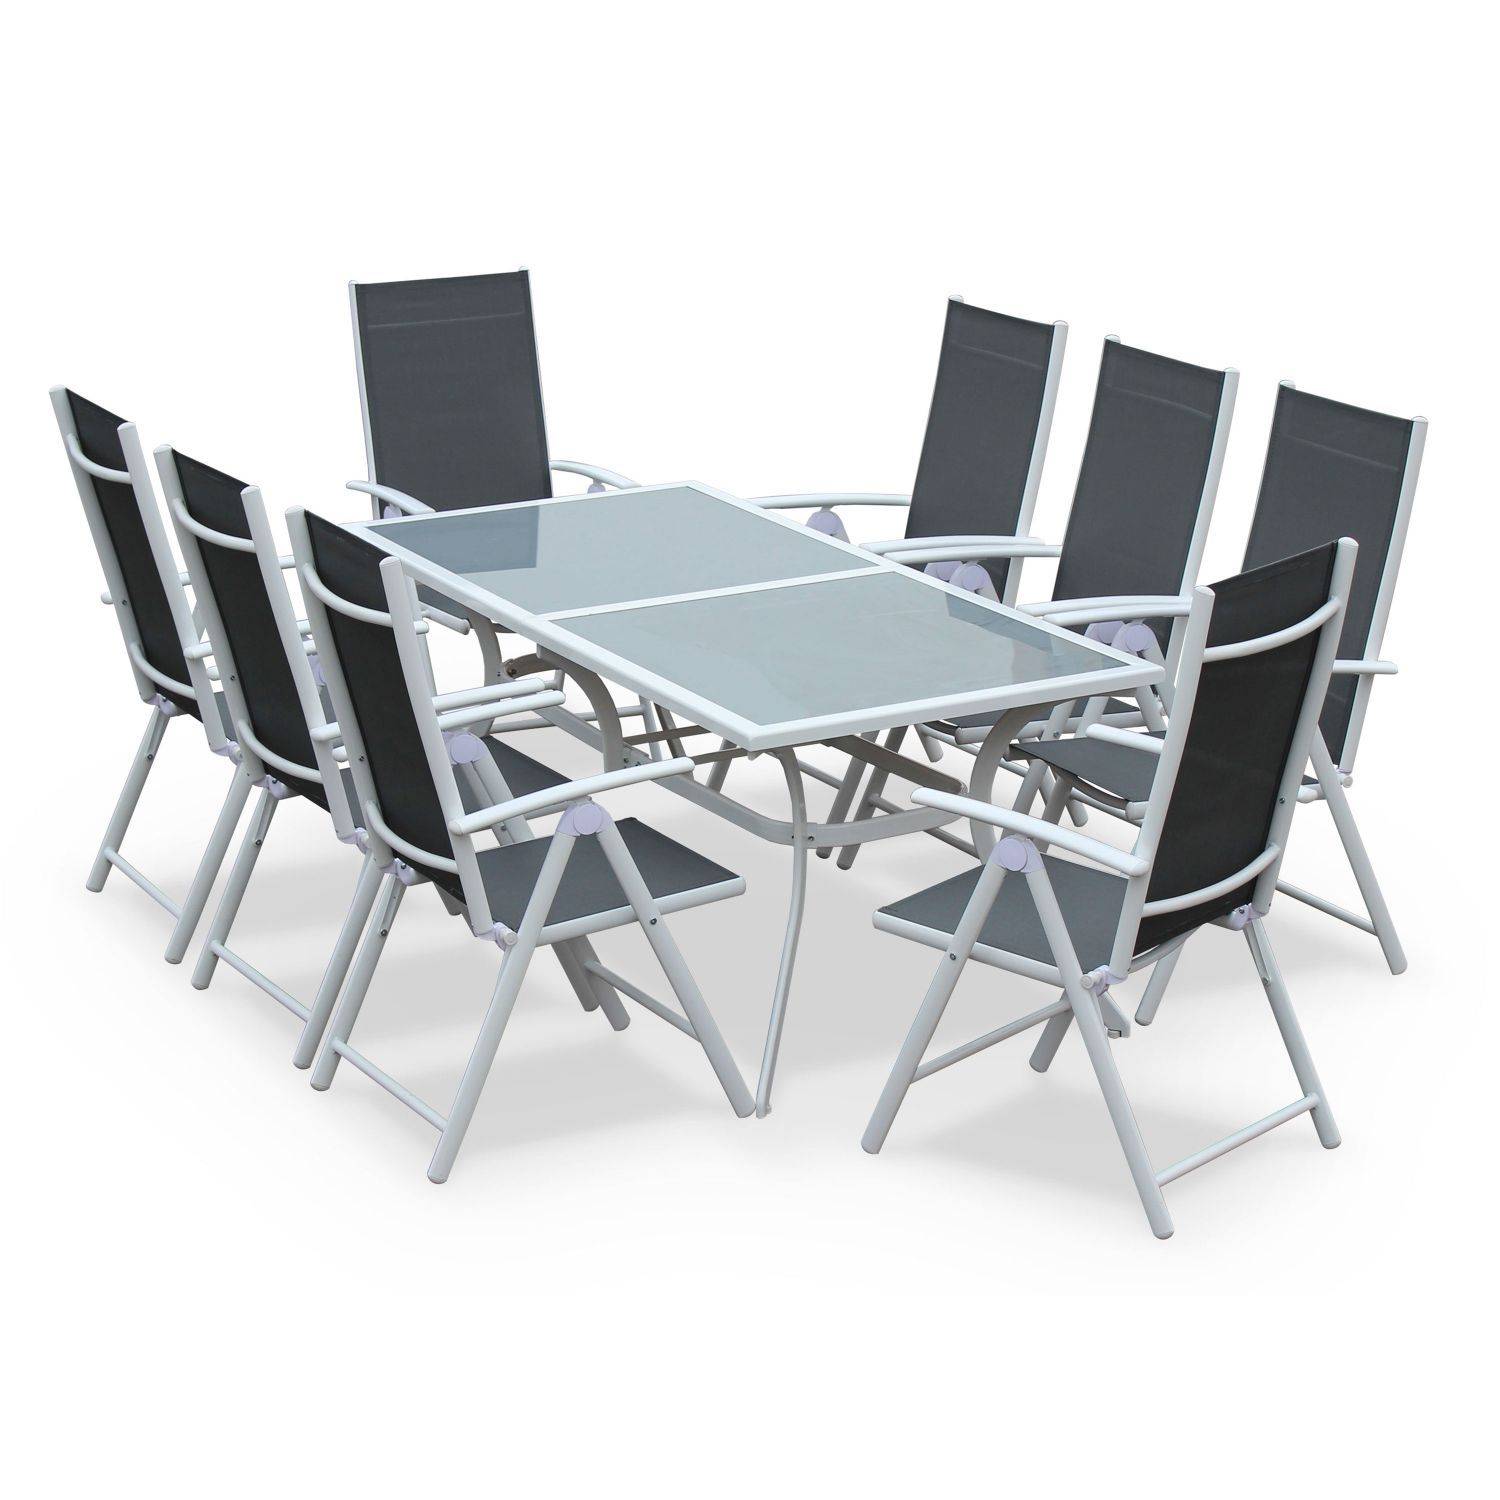 Gartengarnitur aus Aluminium und Textilene - Naevia - Grau, Weiß - 8 Sitze - 1 großer rechteckiger Tisch, 8 Klappstühle Photo1